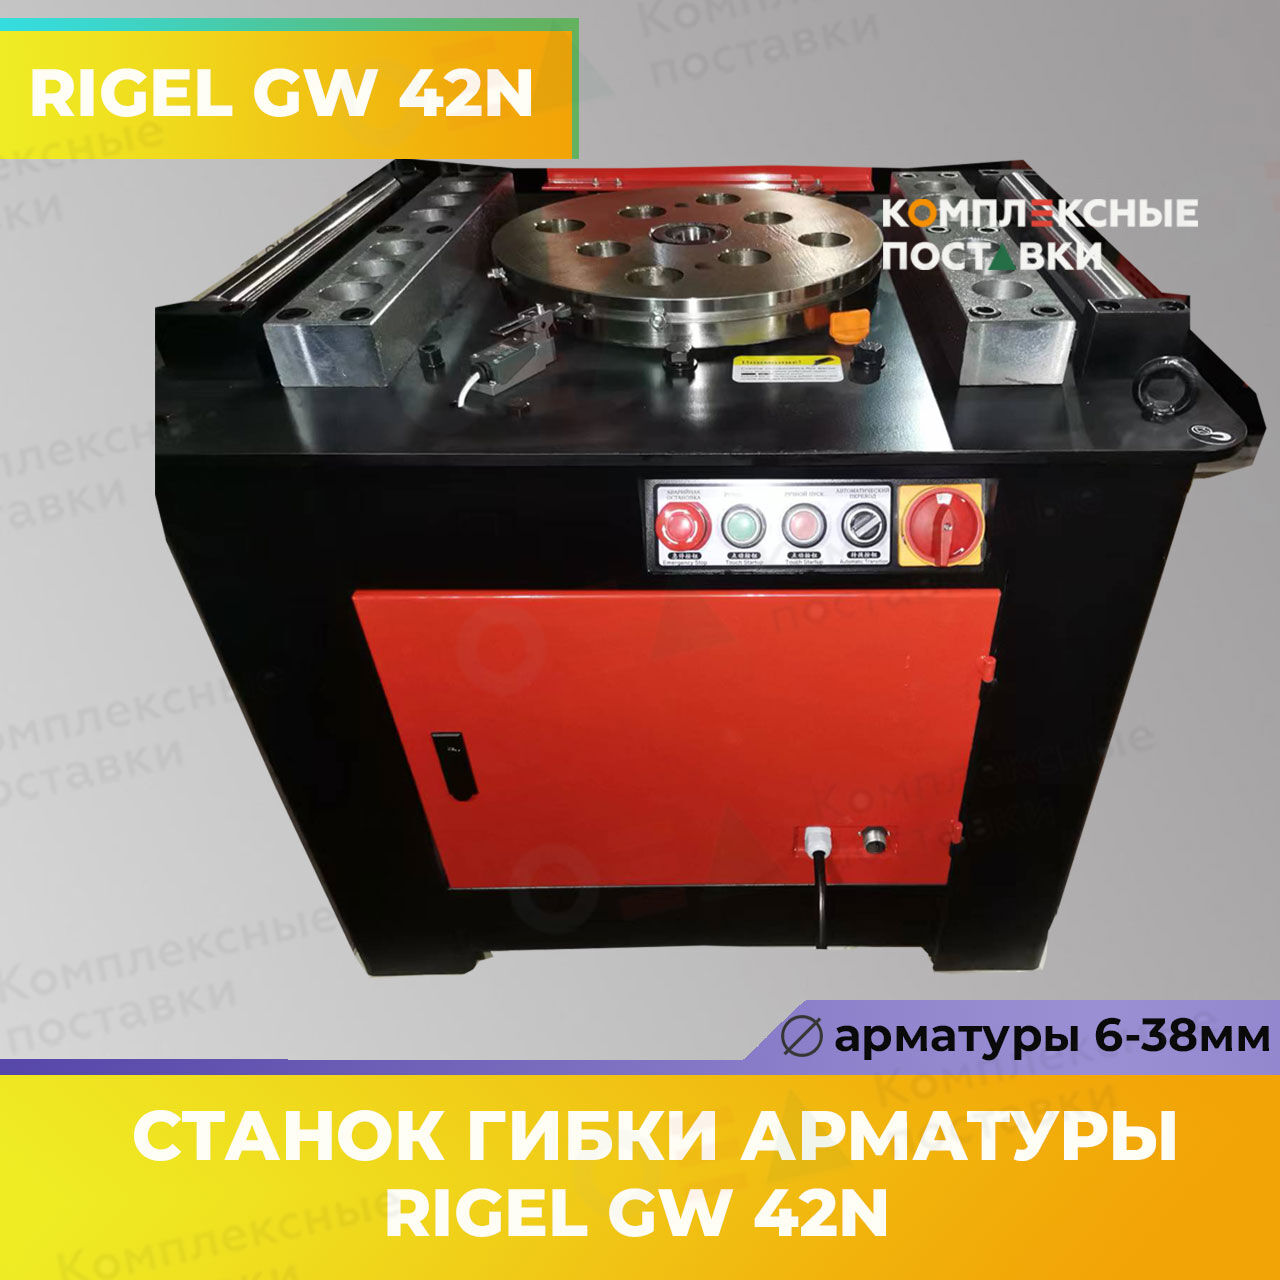 Станок для гибки арматуры RIGEL GW 42N  Rigel 6-38мм купить в Комплексные Поставки 1